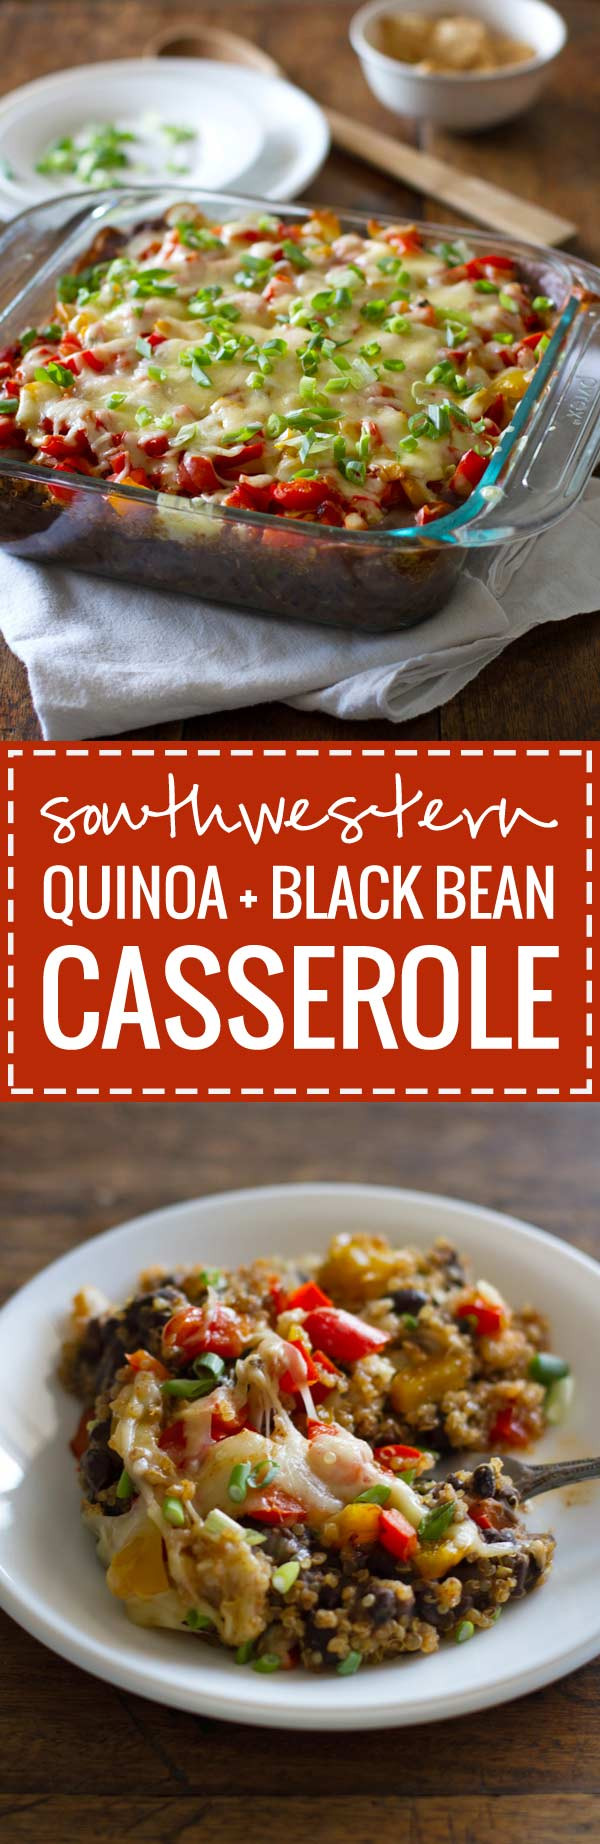 Black Bean Quinoa Casserole
 Southwestern Quinoa and Black Bean Casserole Recipe